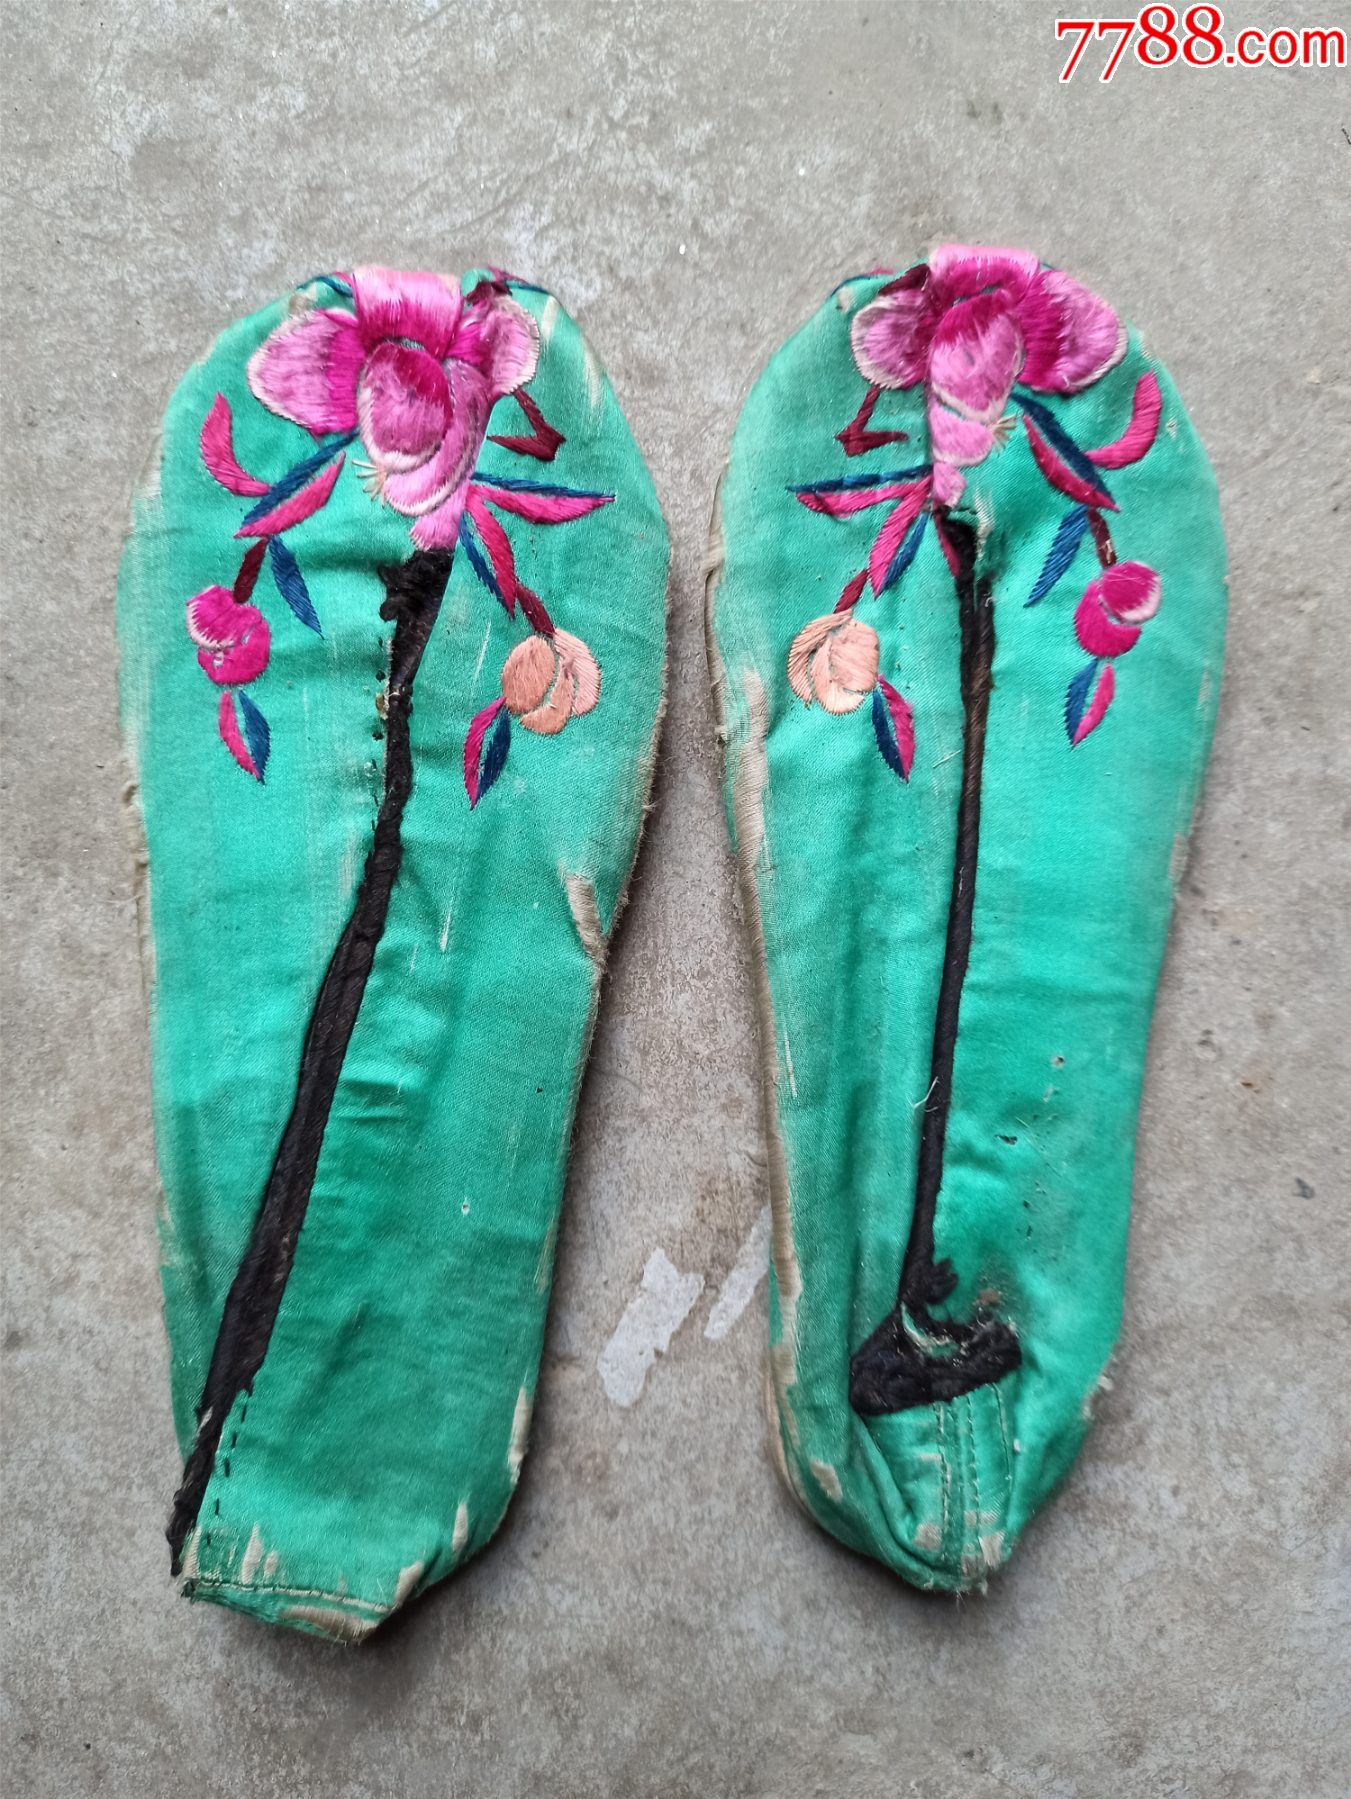 一双绣花鞋,民国时期的,有点老旧的磨损痕迹,请看仔细再拍